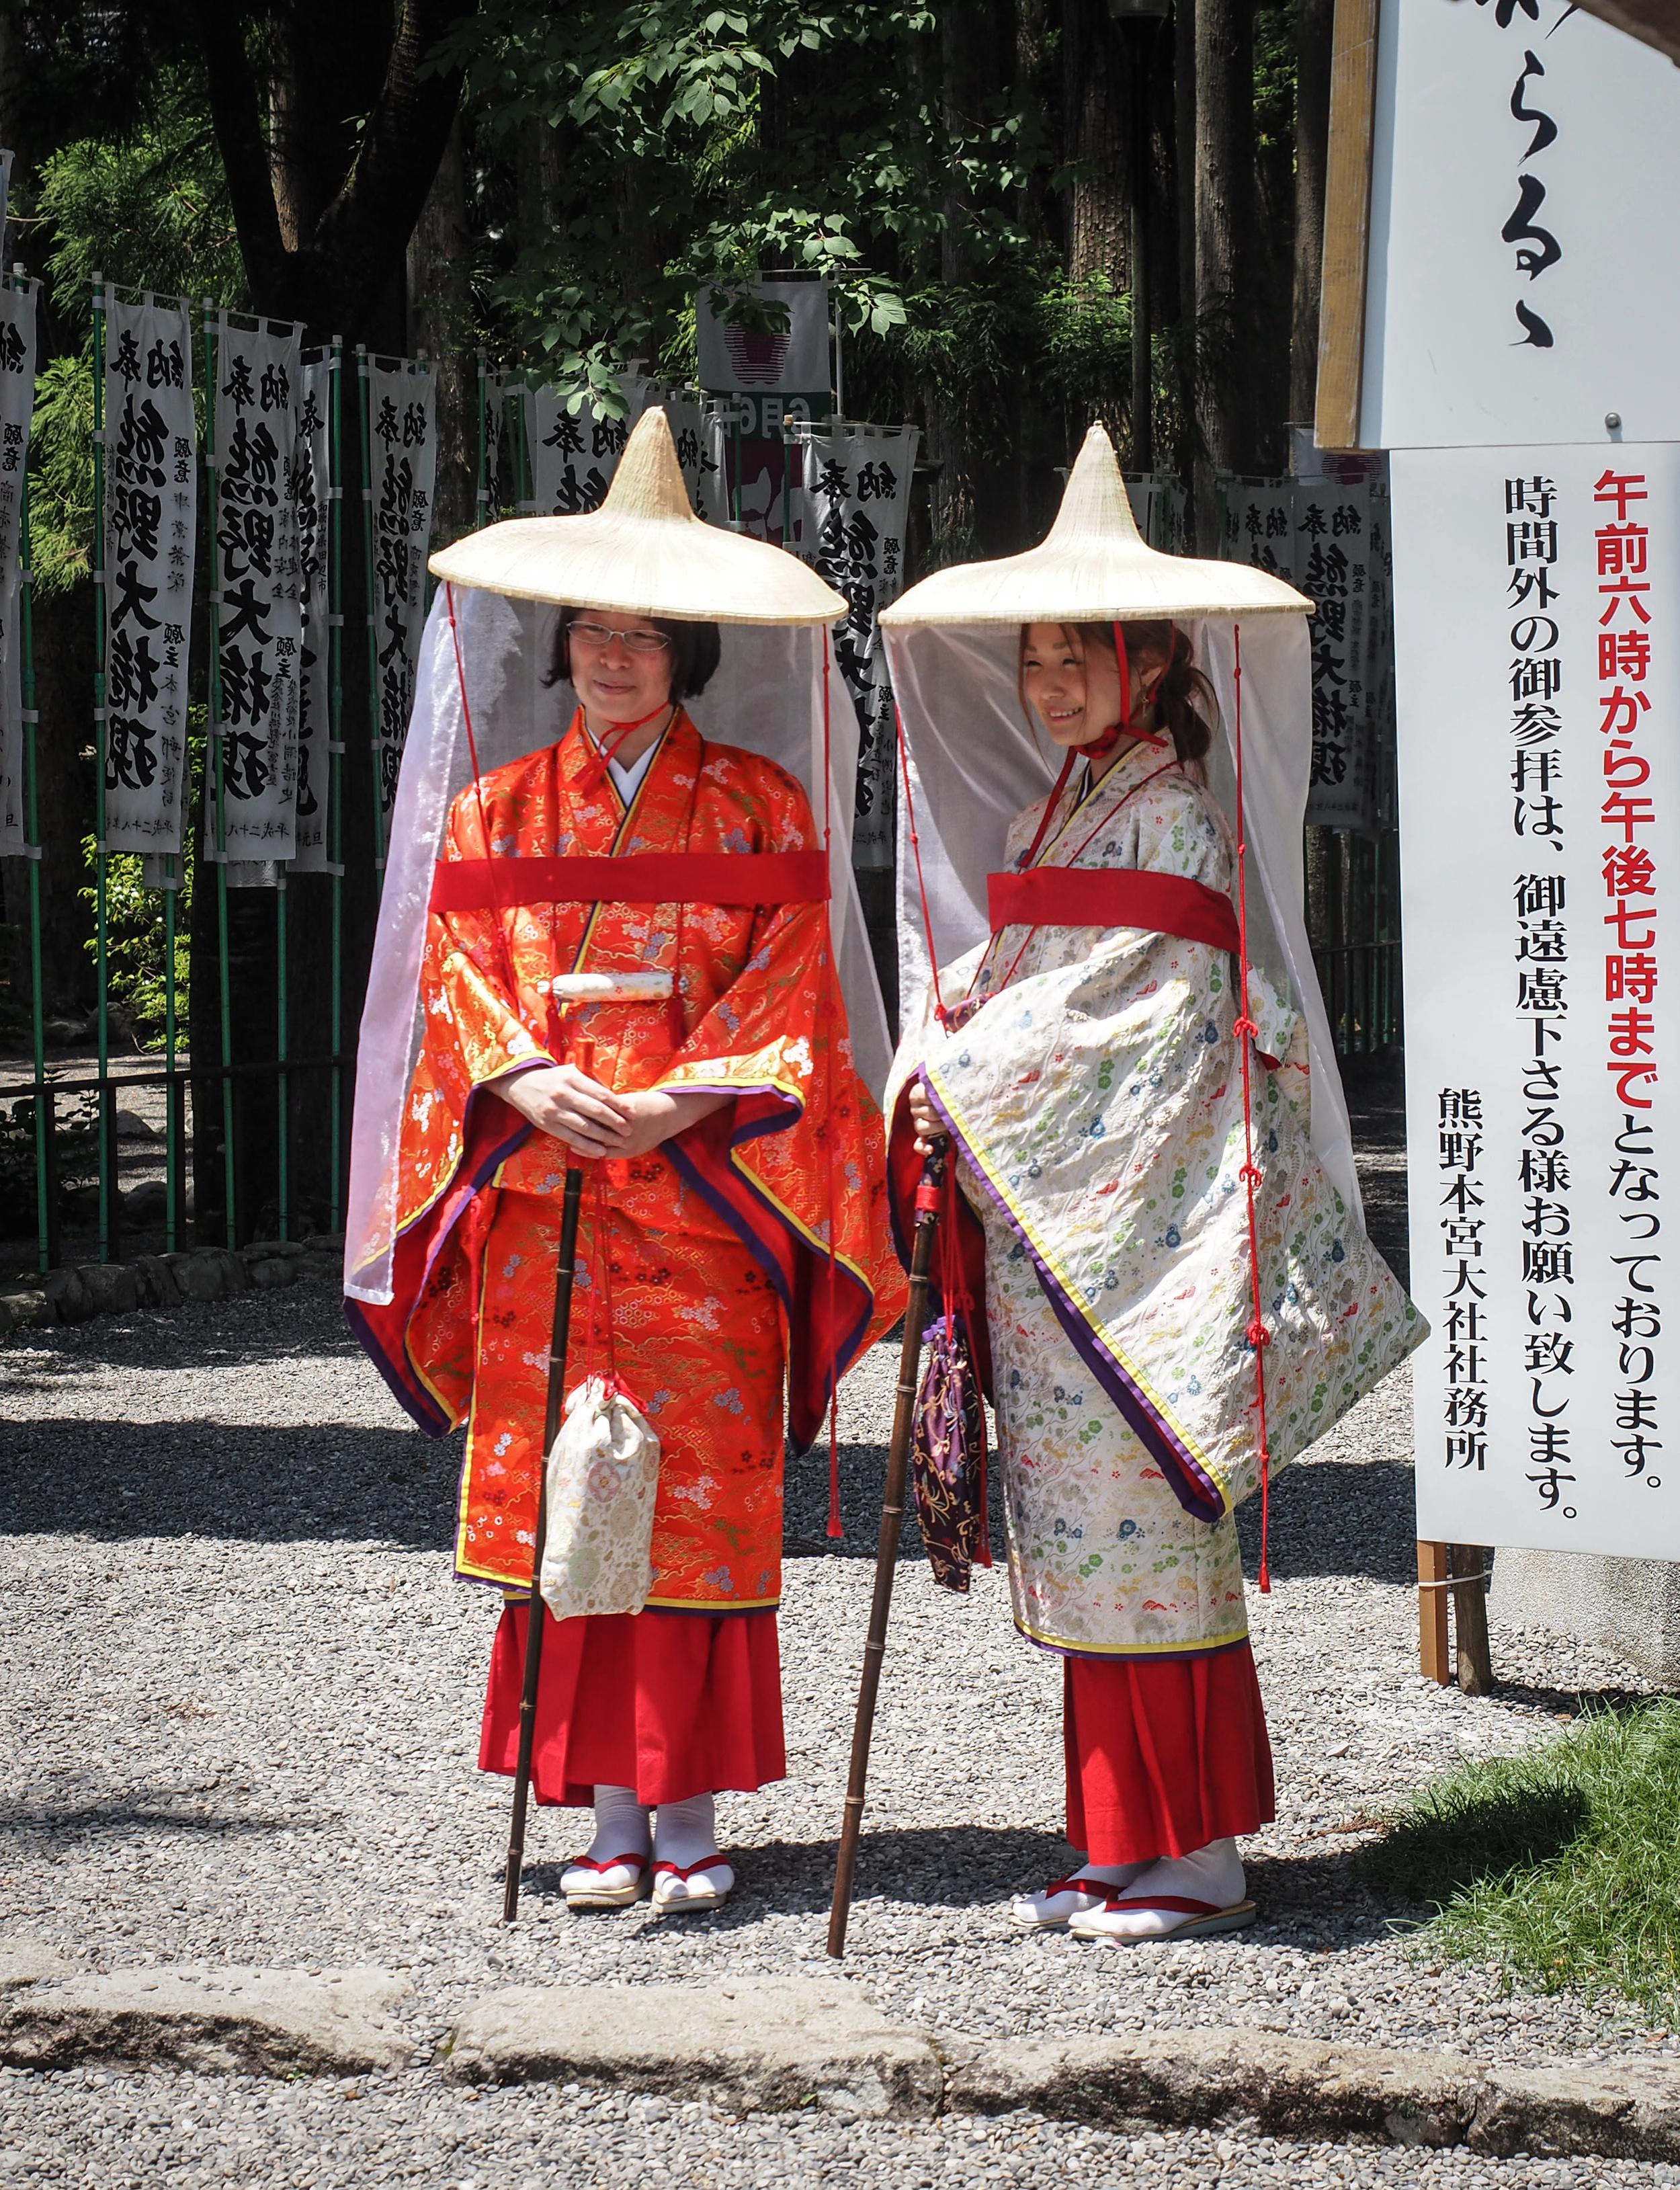 Women dressed in historic pilgrim attire